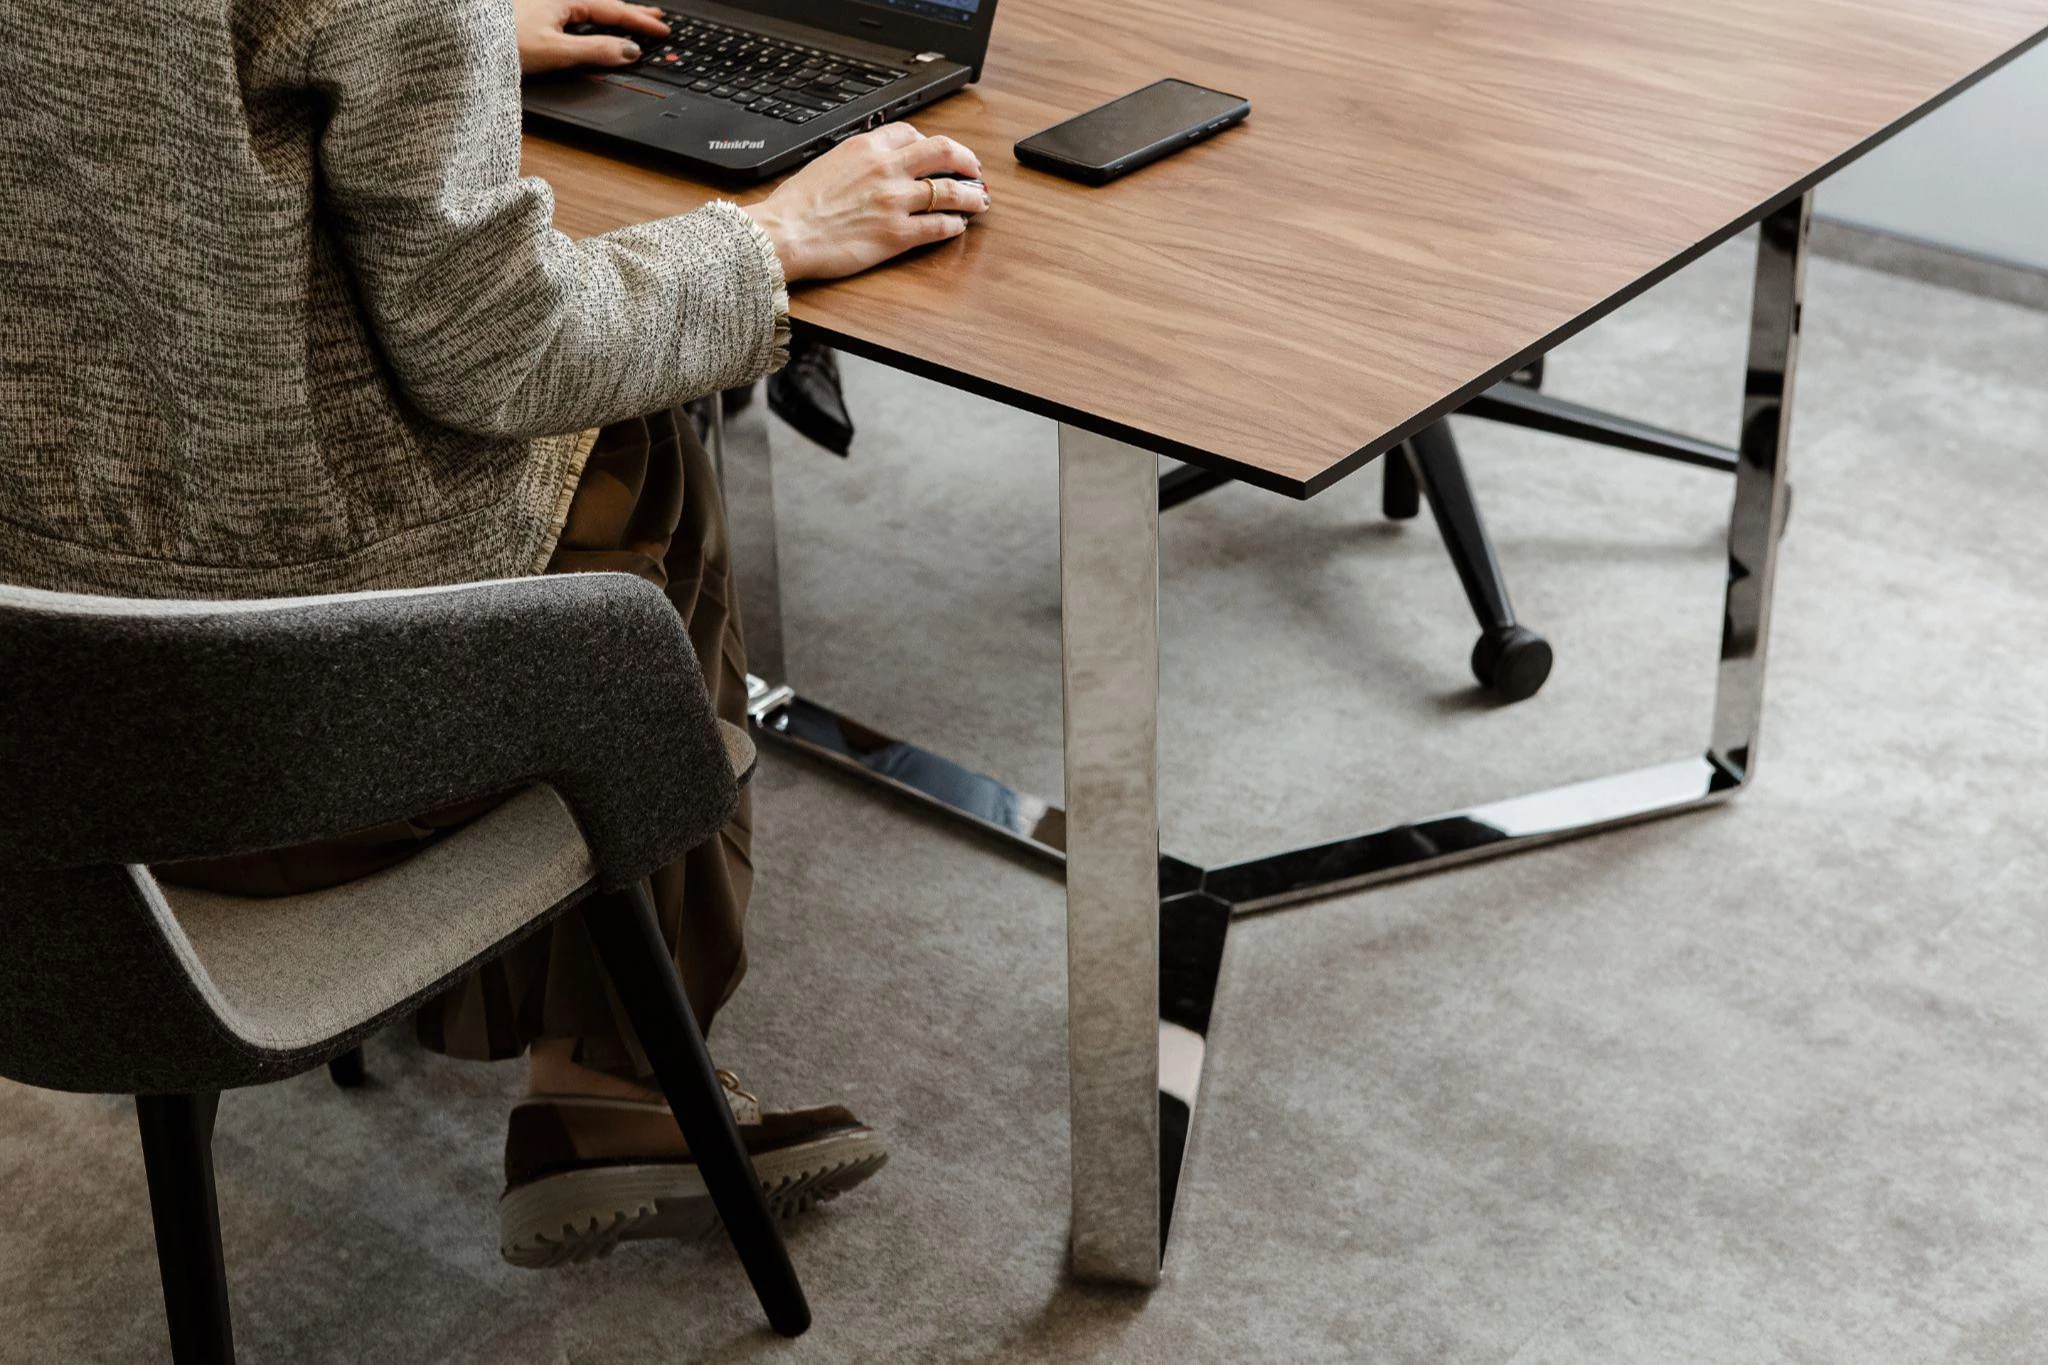 Biuro baldai – ir sėkmingam verslui, ir darbui namuose